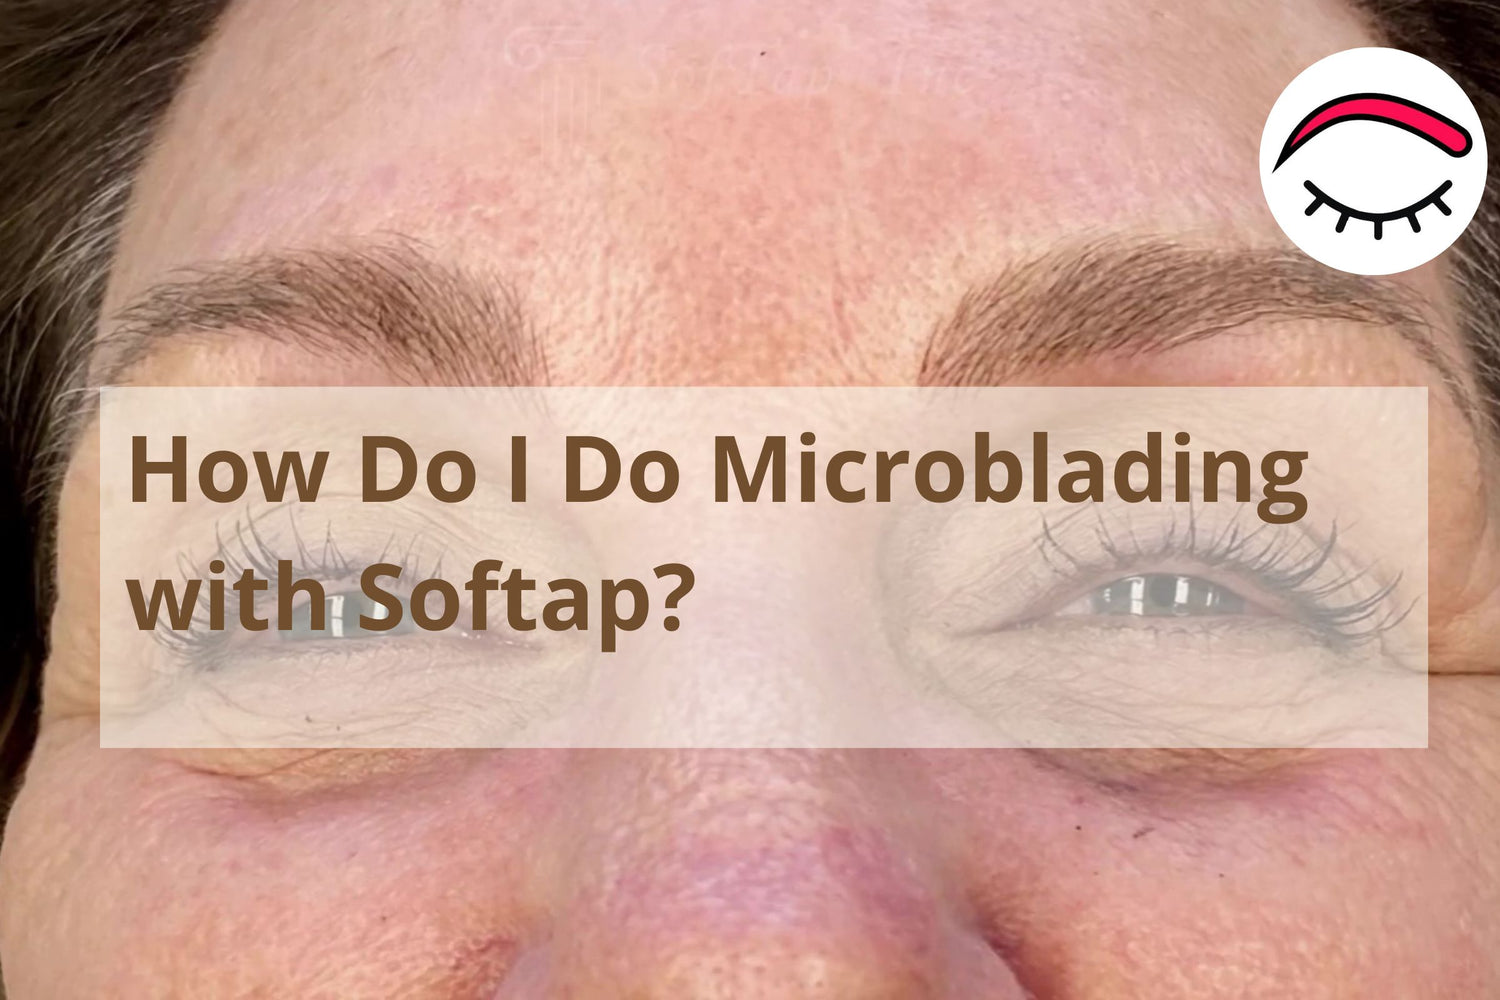 How do I do Microblading with Softap?